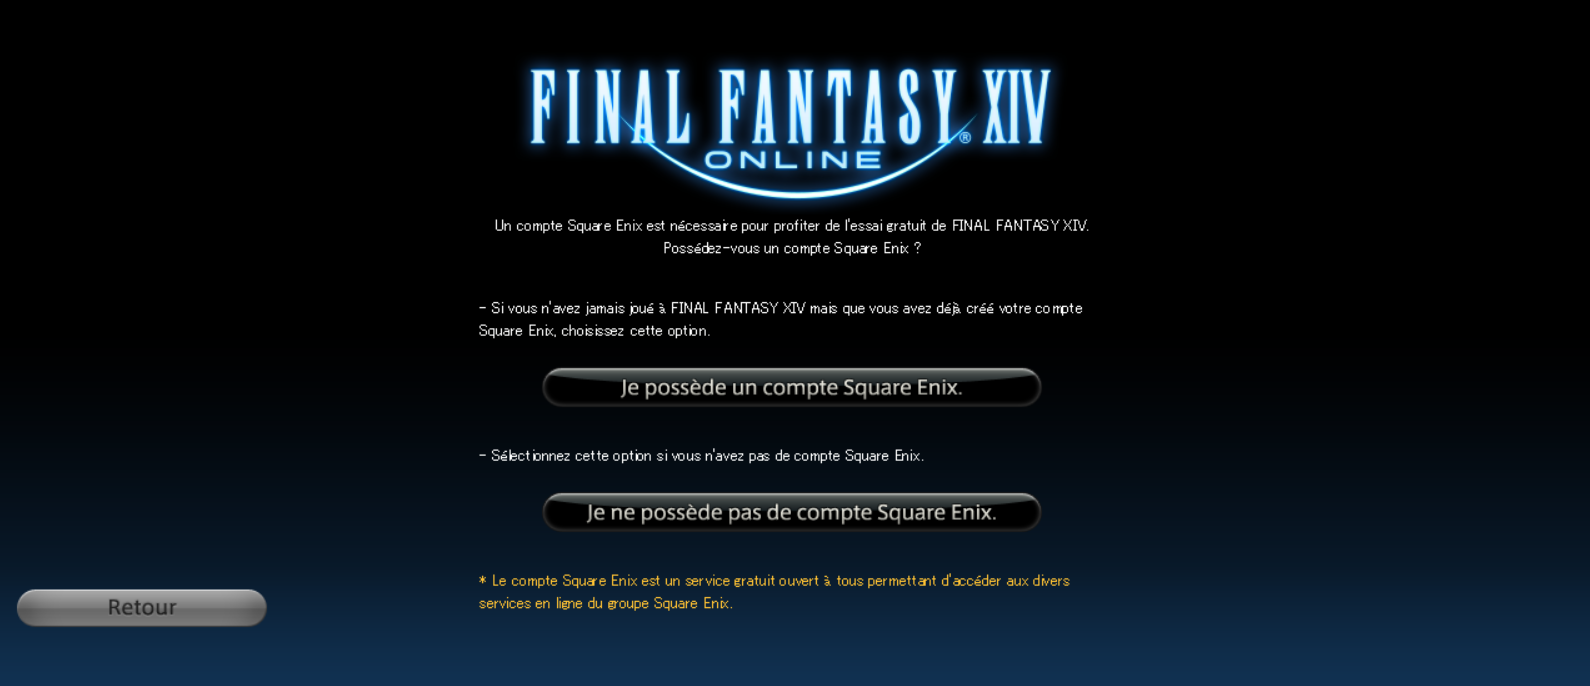 Une image informative avec des instructions pour lancer FINAL FANTASY 14 si vous possédez ou non un compte Square Enix.